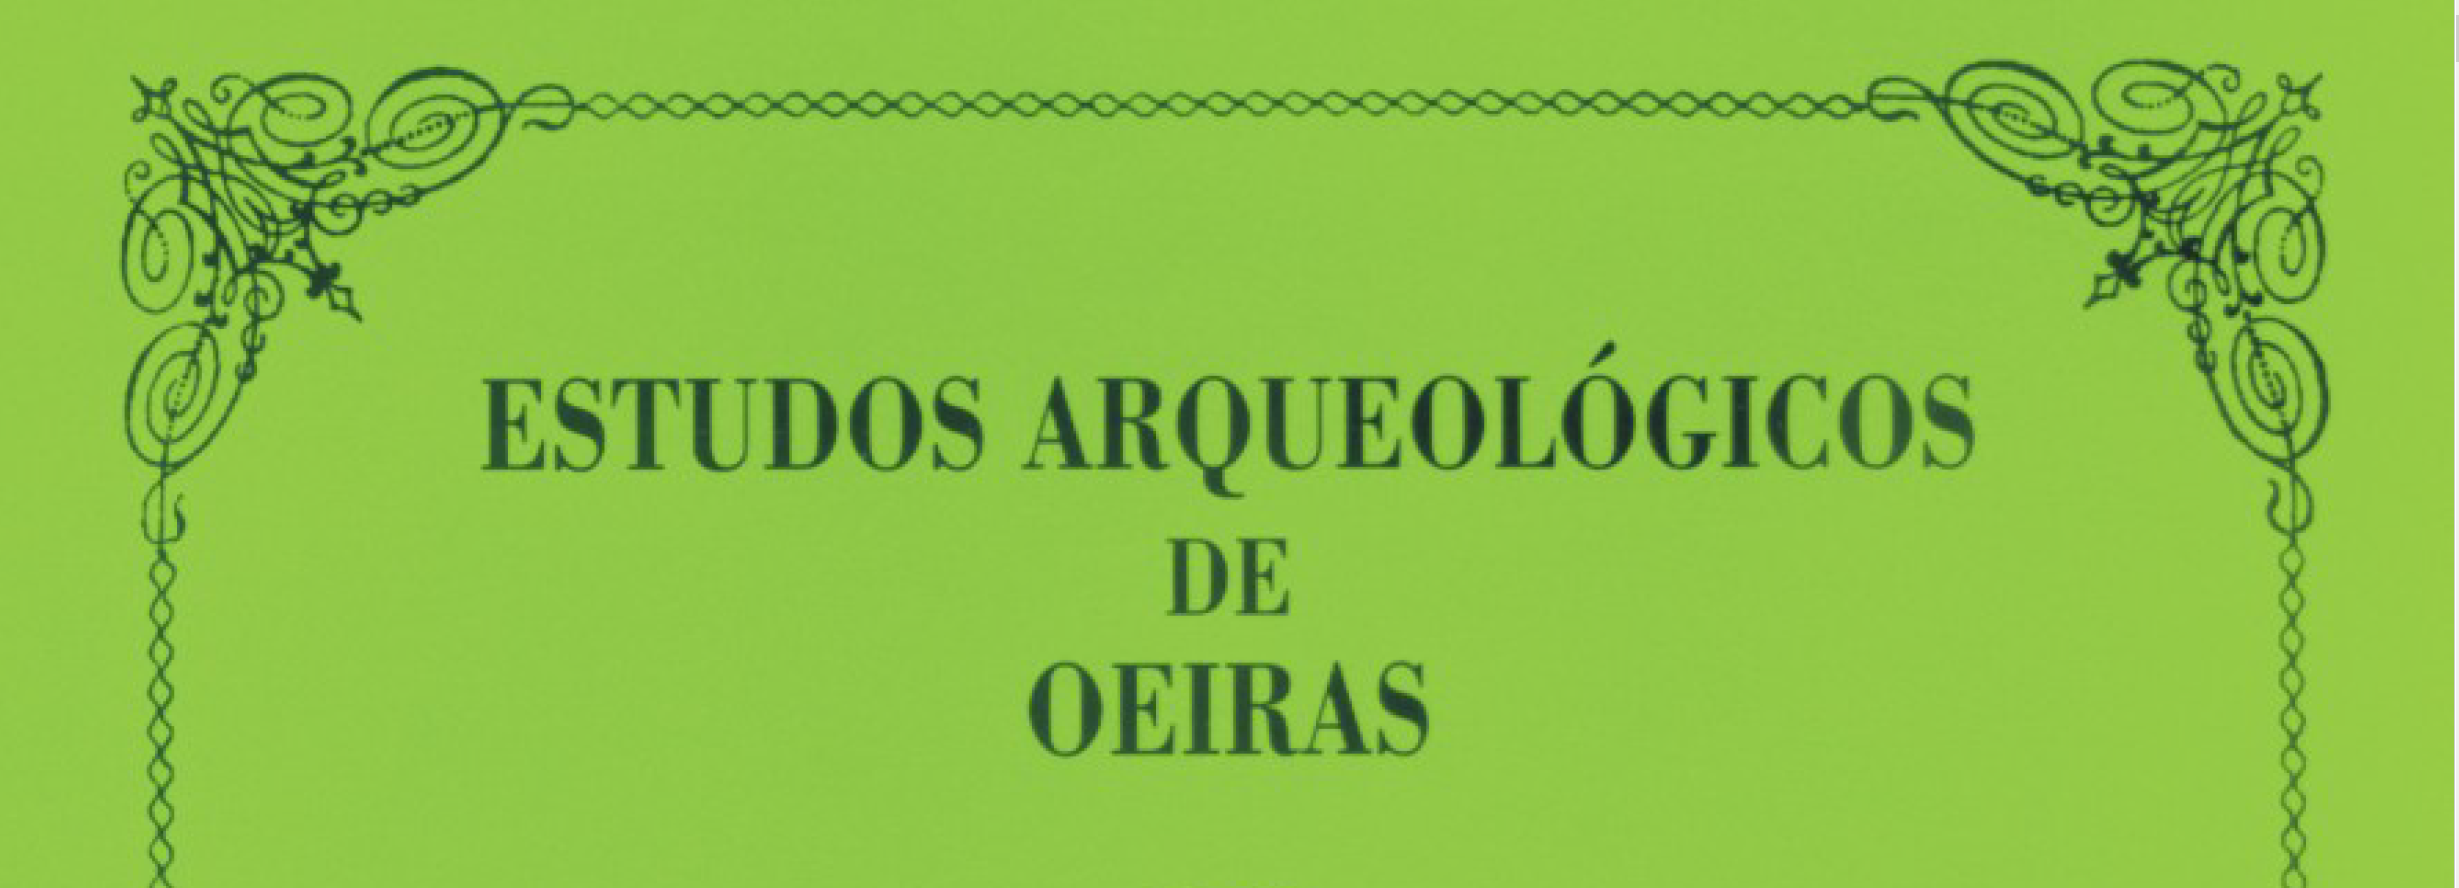 Estudos Arqueológicos de Oeiras, 20